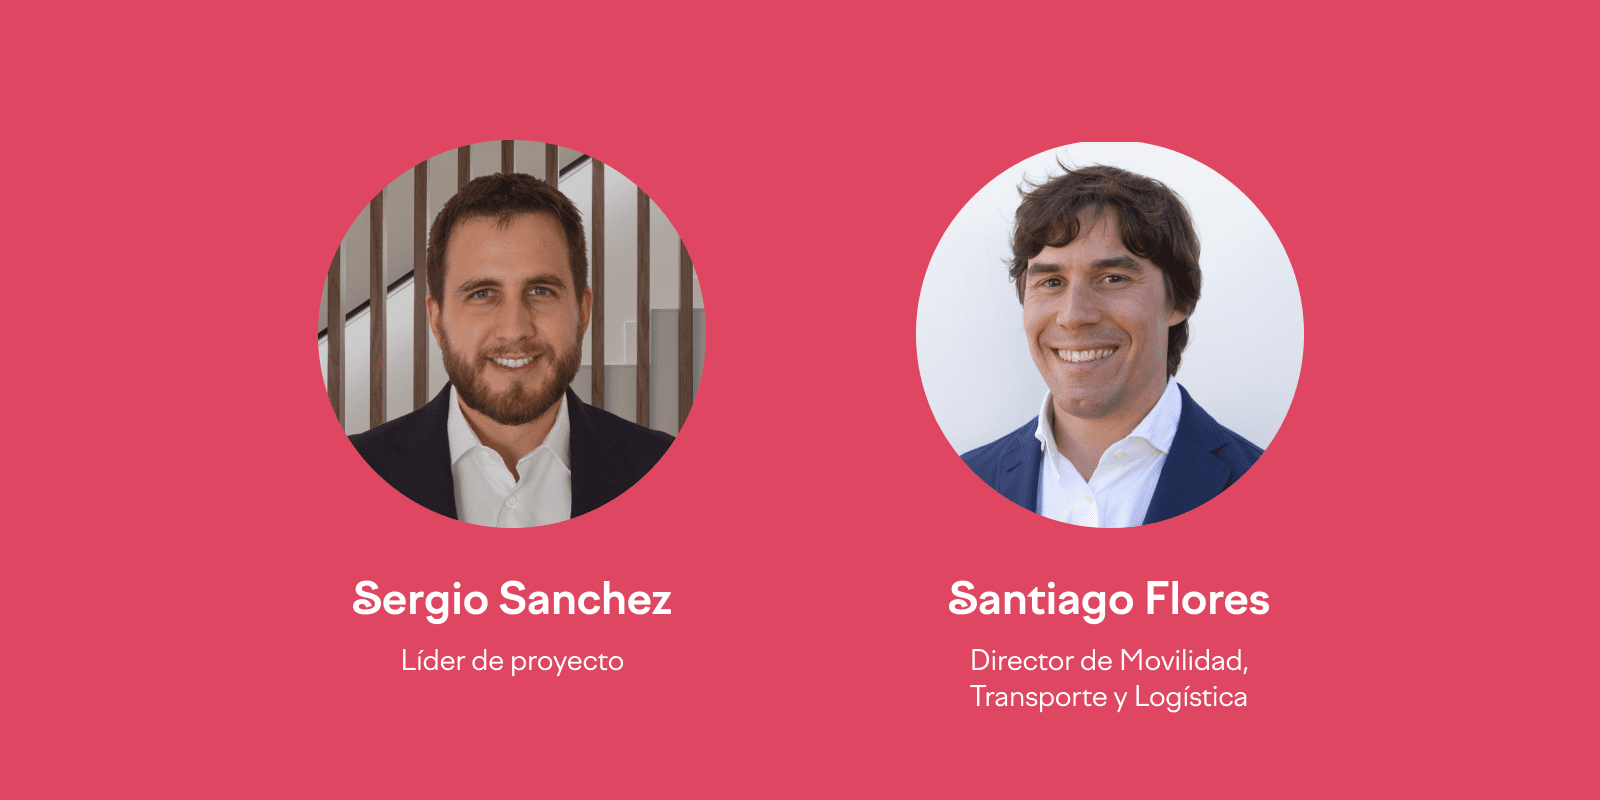 Imágenes de Sergio Sánchez, líder de proyectos, y Santiago Flores, Director de Movilidad, Transporte y Logística.